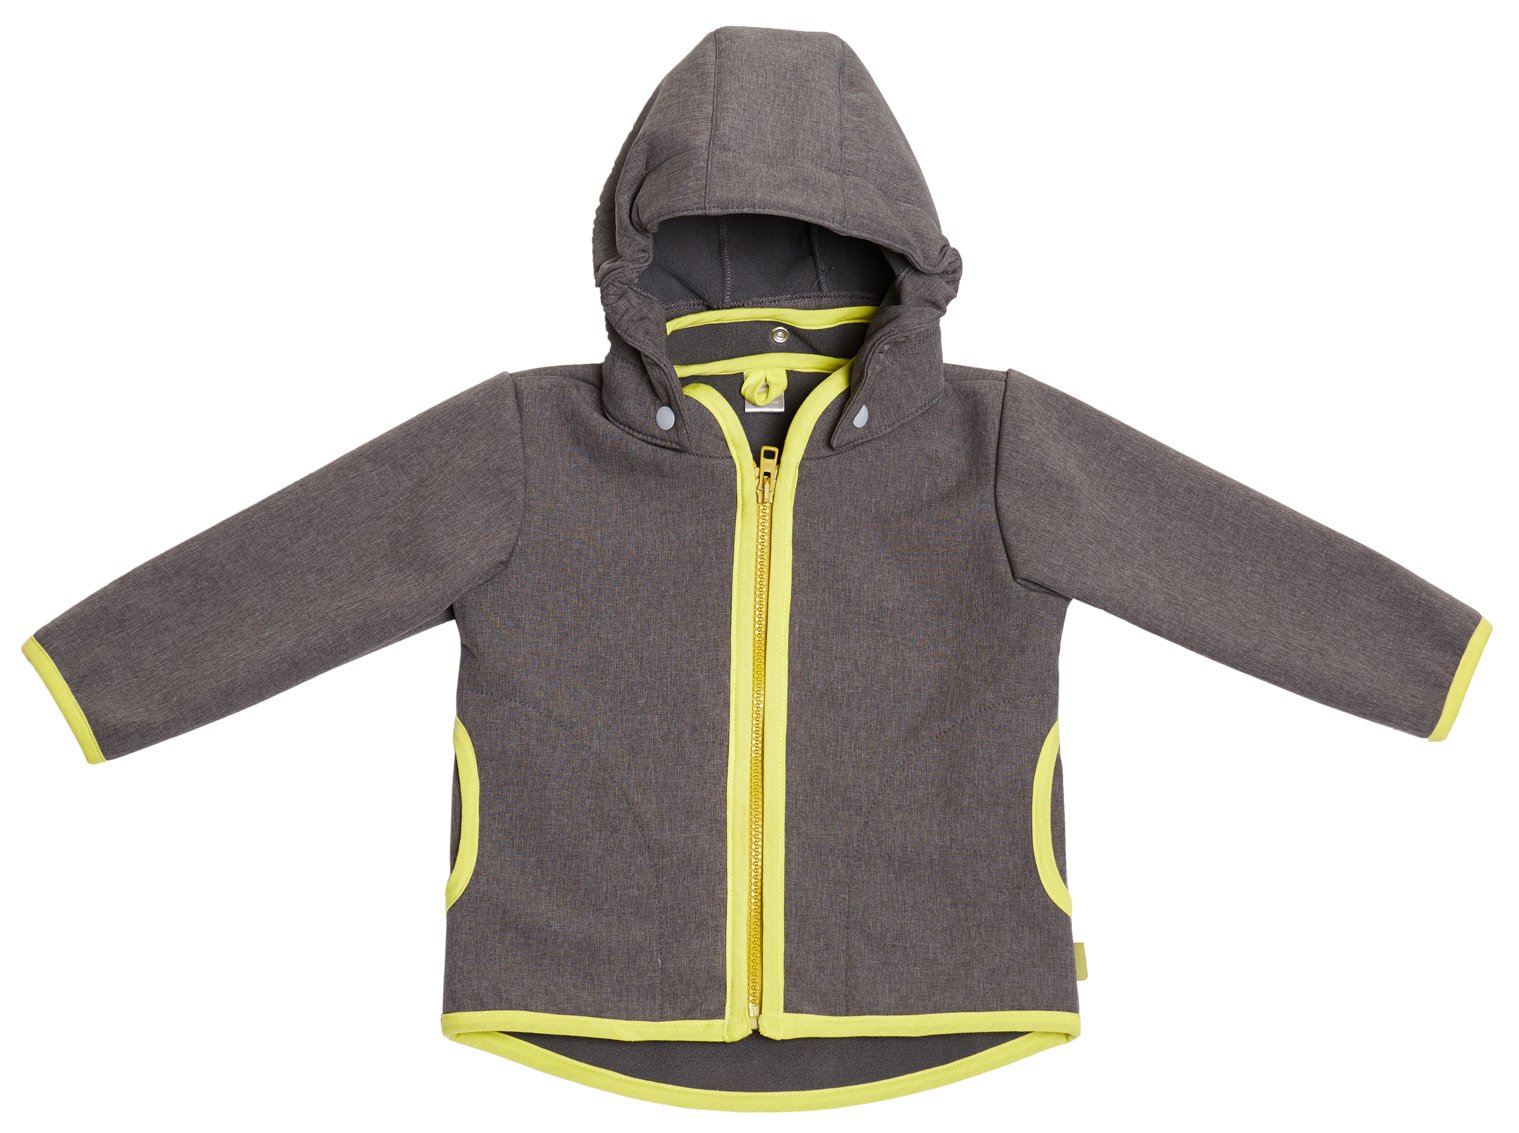 be! Baby/Kinder Softshell Jacke mit Leichter Fleece-Schicht innen, Wassersäule: 10.000 mm, Gr. 98/104, grau-Melange